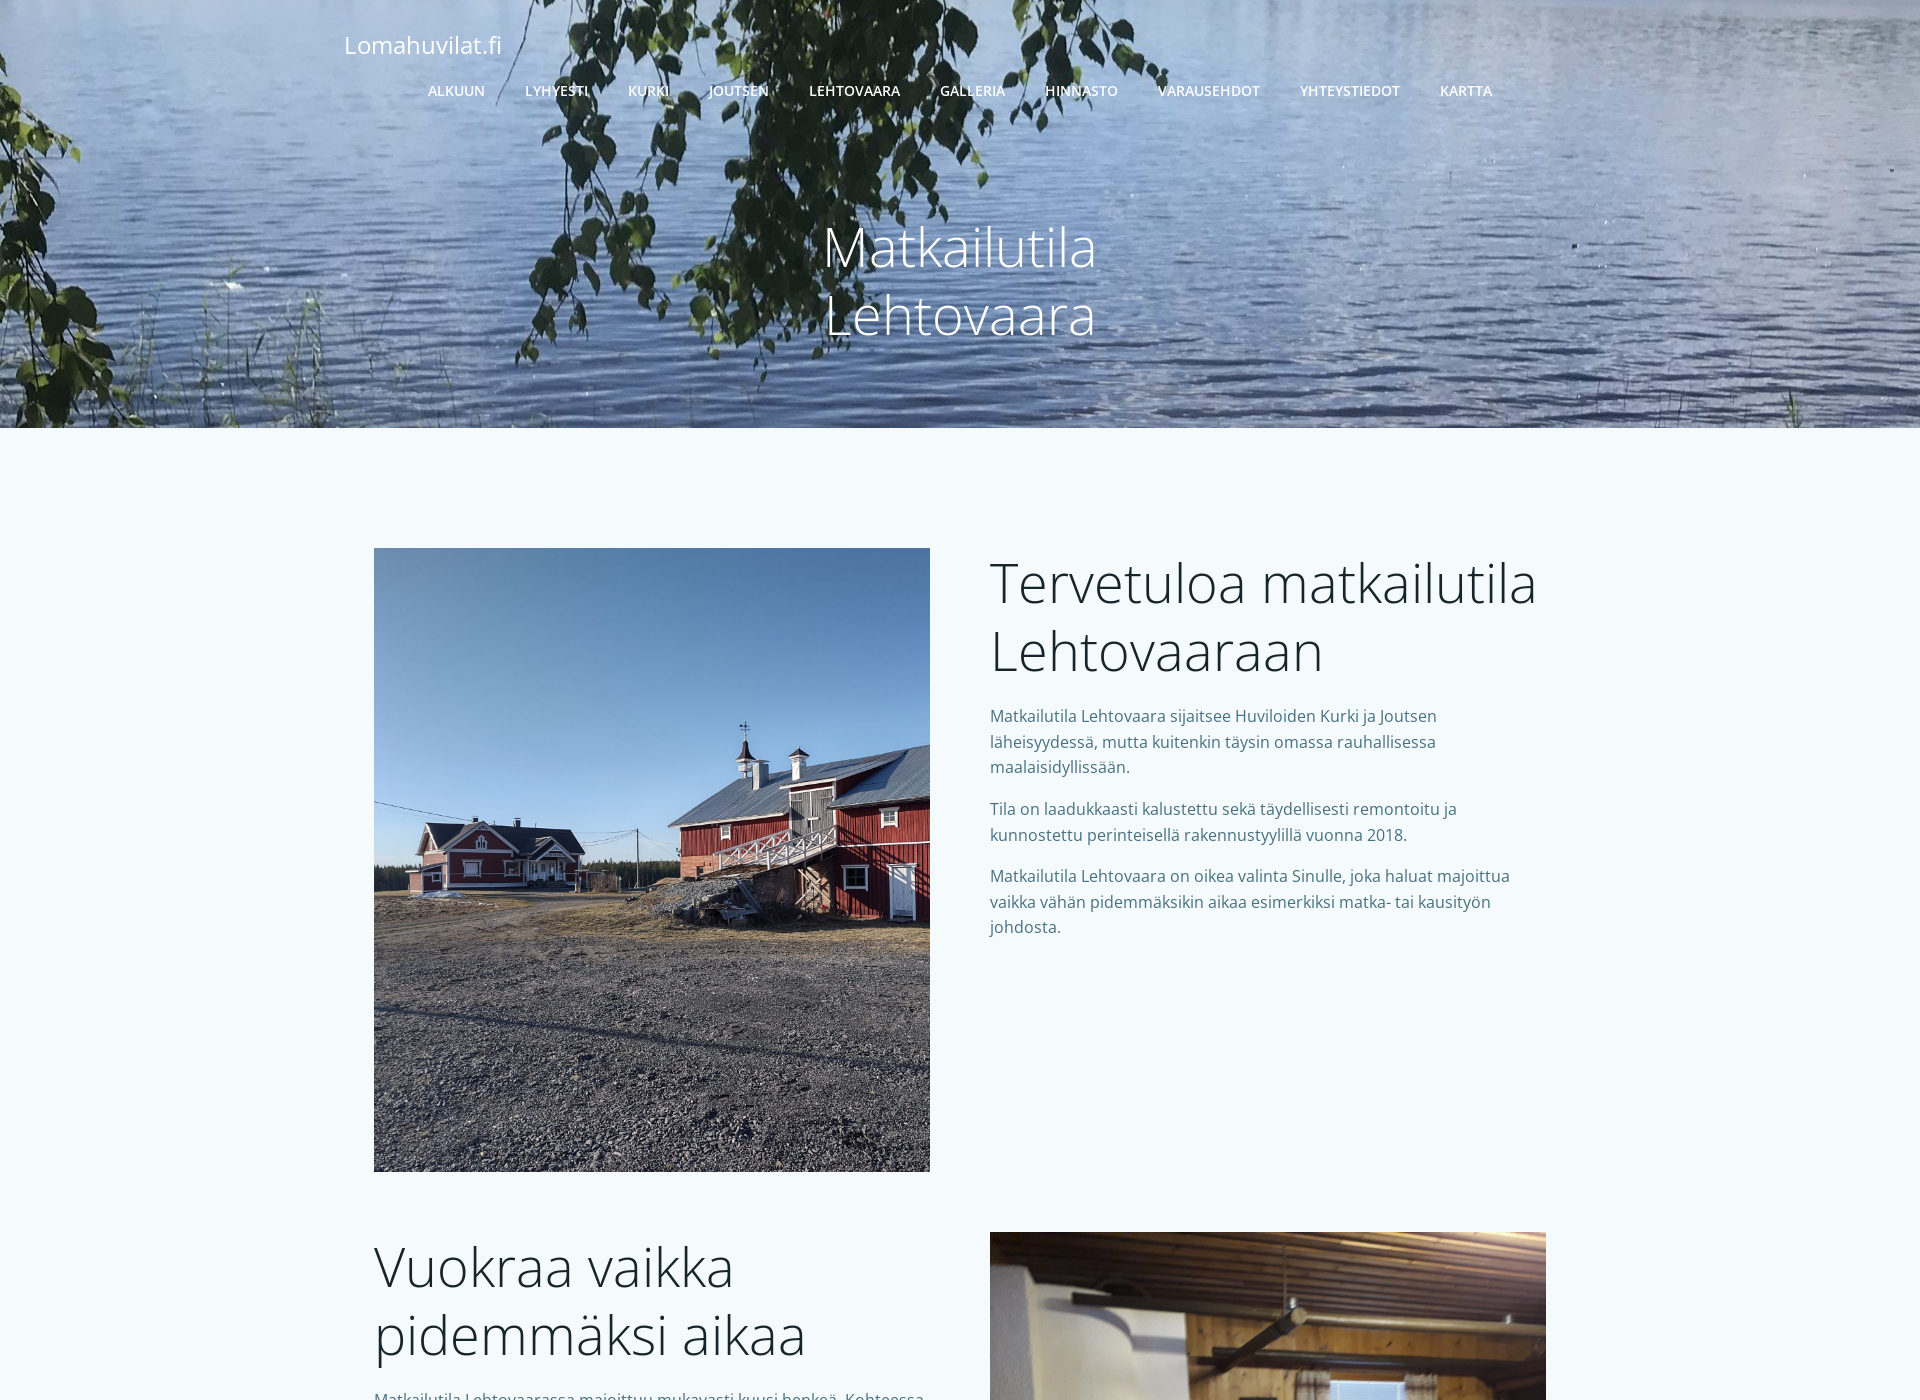 Screenshot for matkailutilalehtovaara.fi